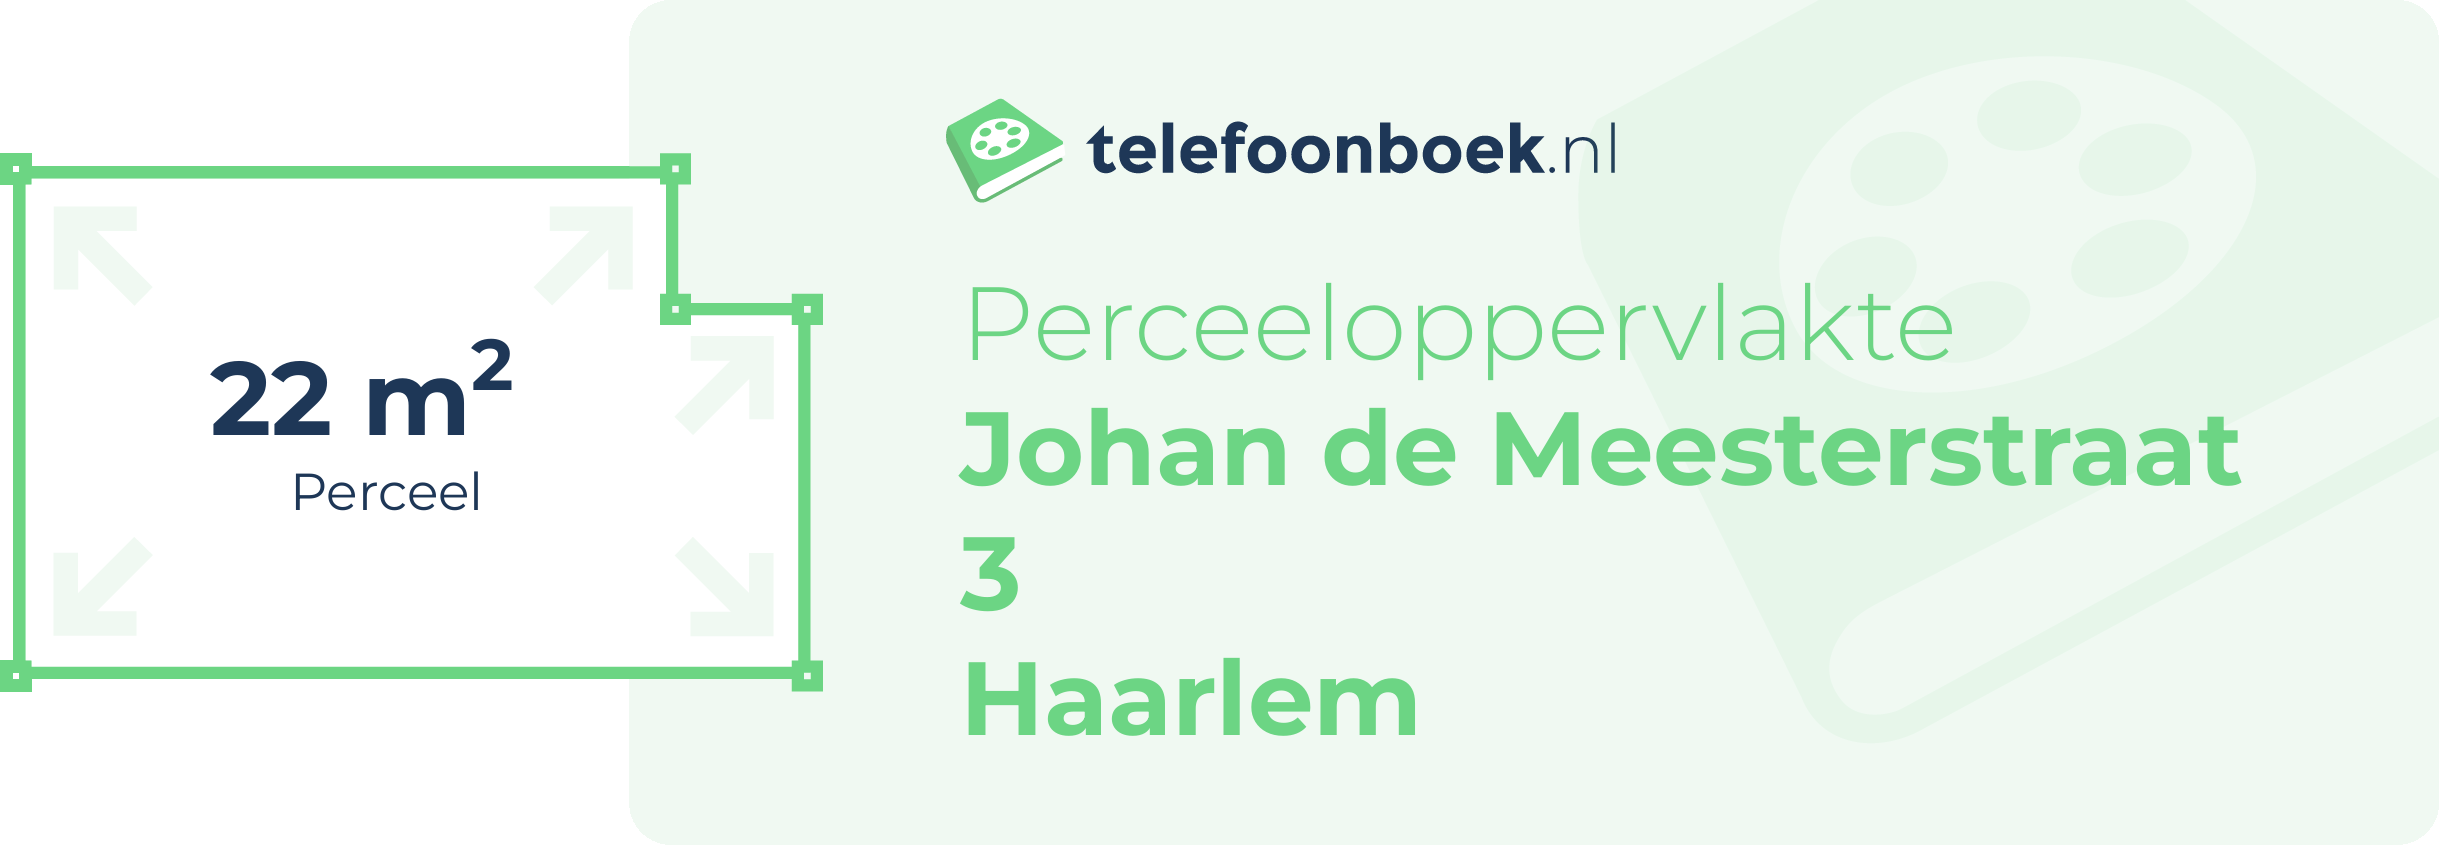 Perceeloppervlakte Johan De Meesterstraat 3 Haarlem